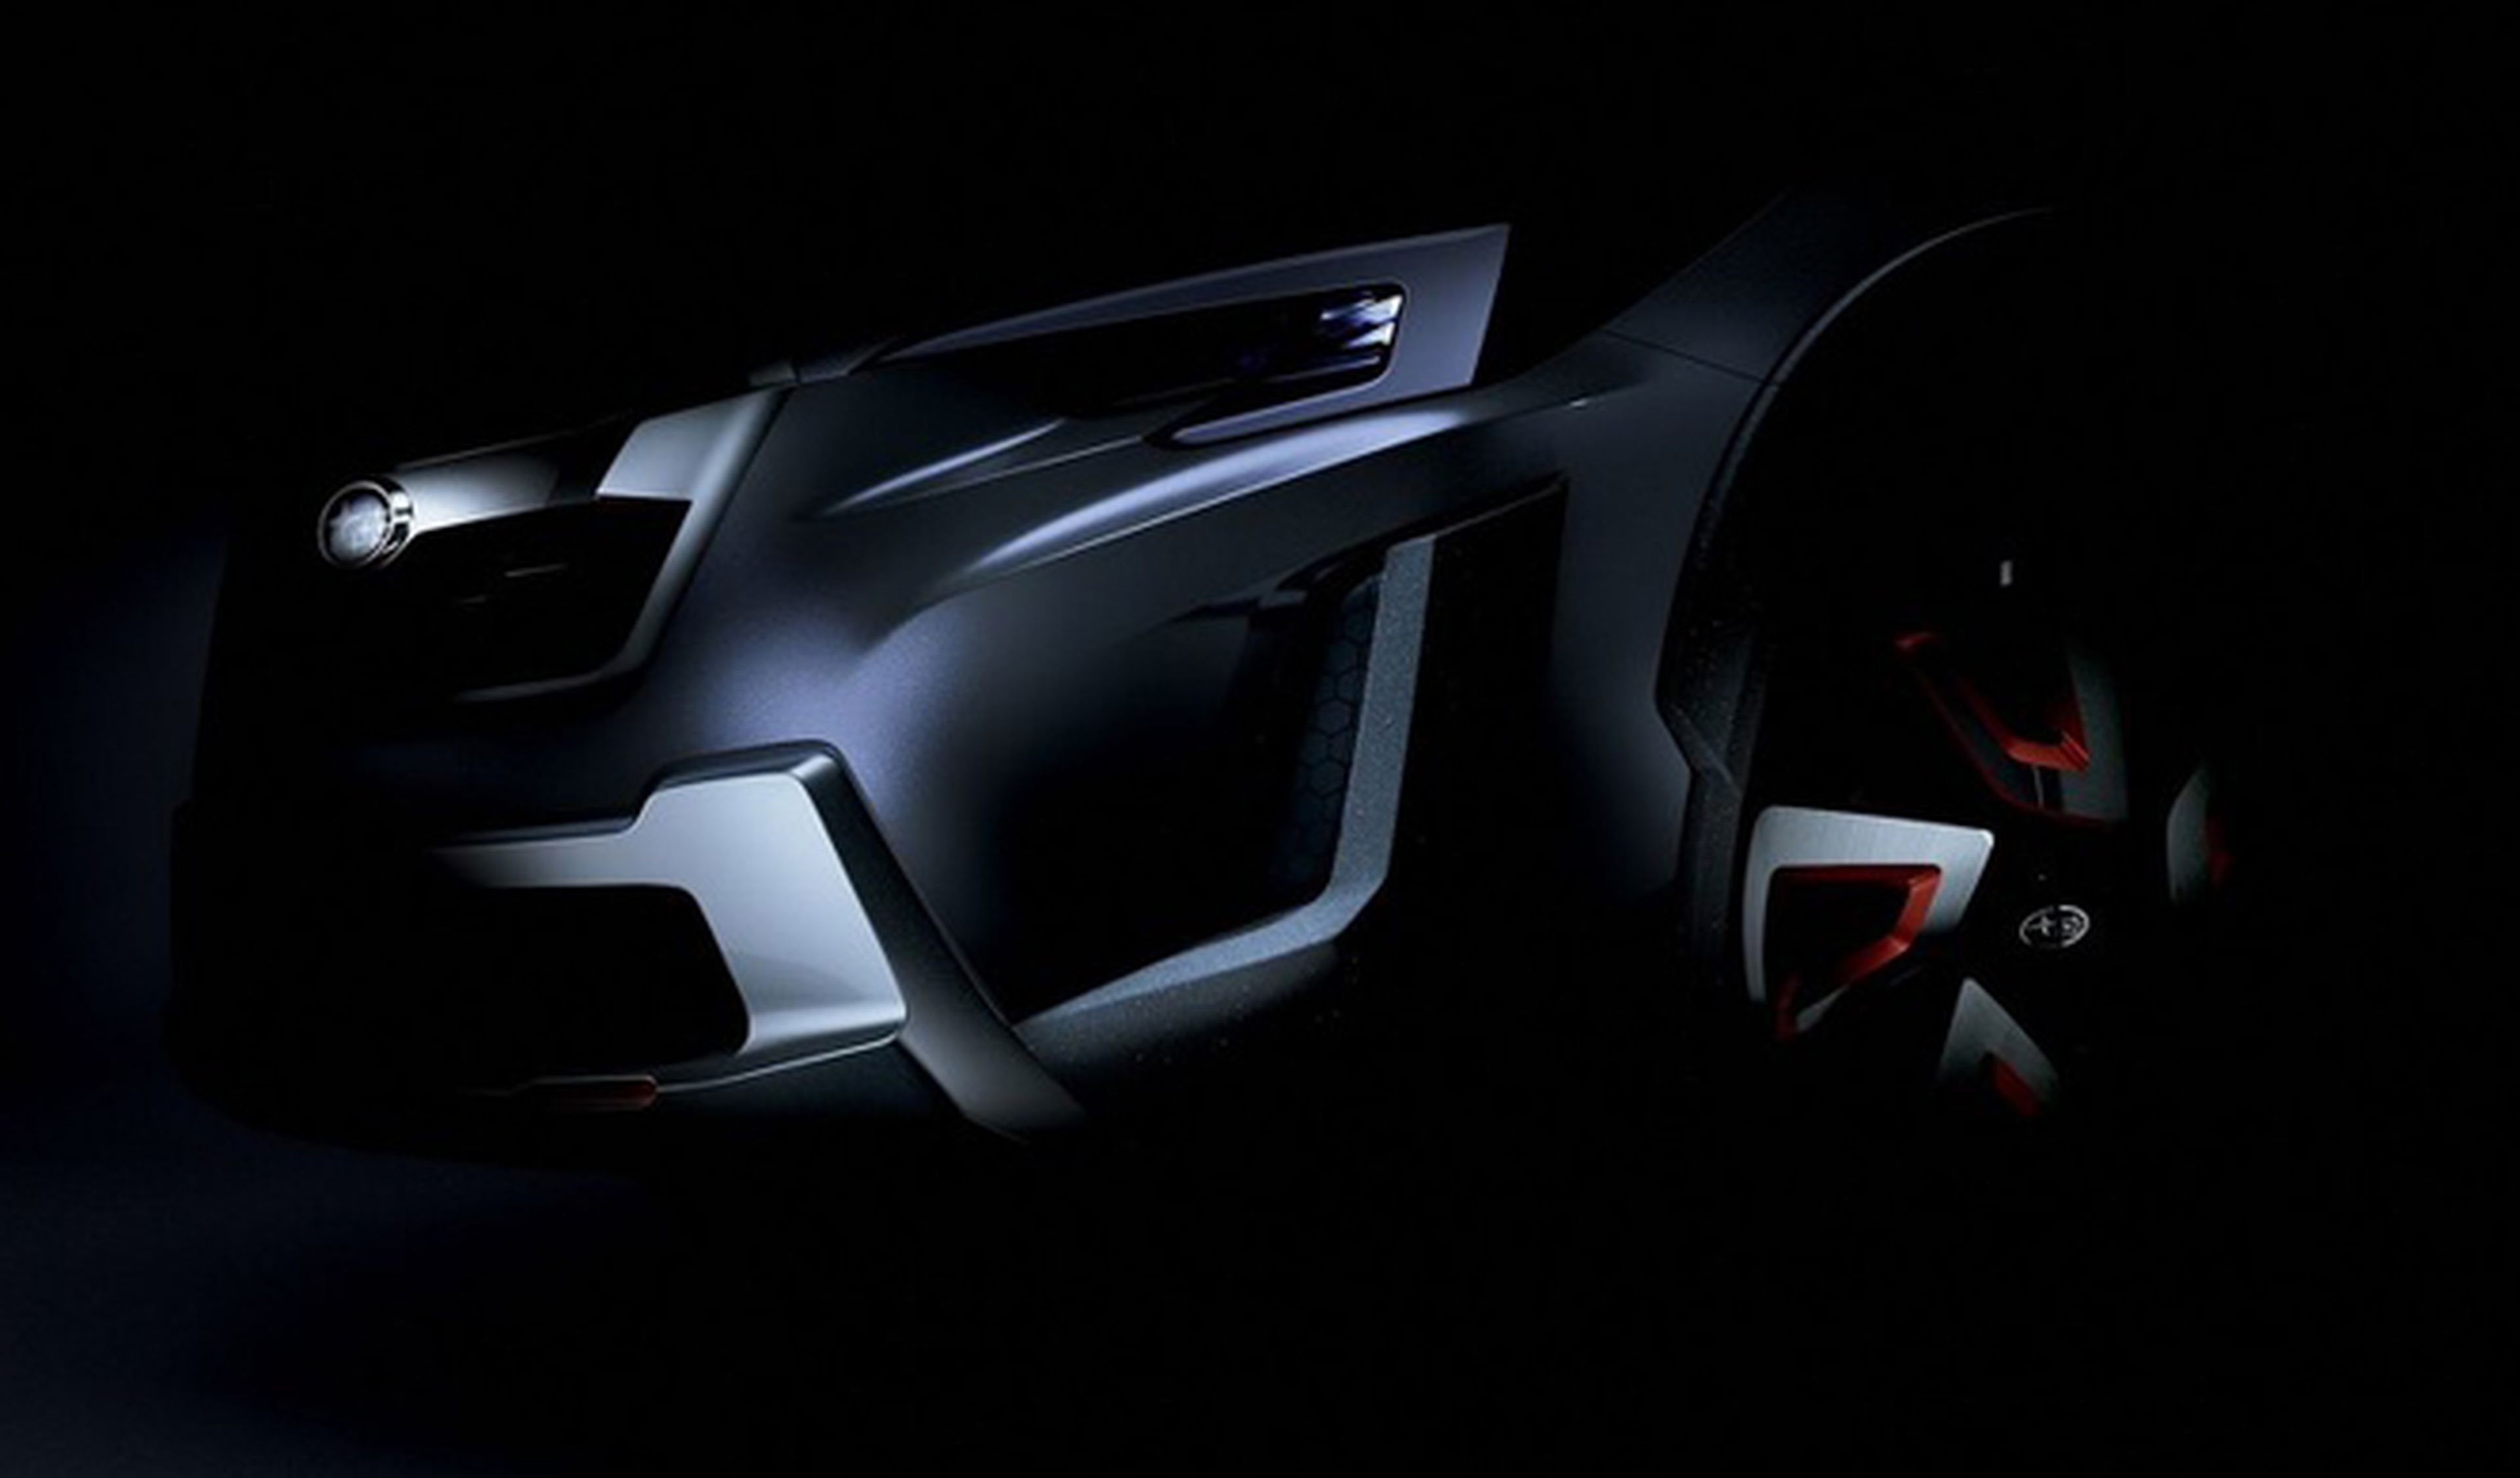 Confirmado: Subaru presentará el XV Concept en Ginebra